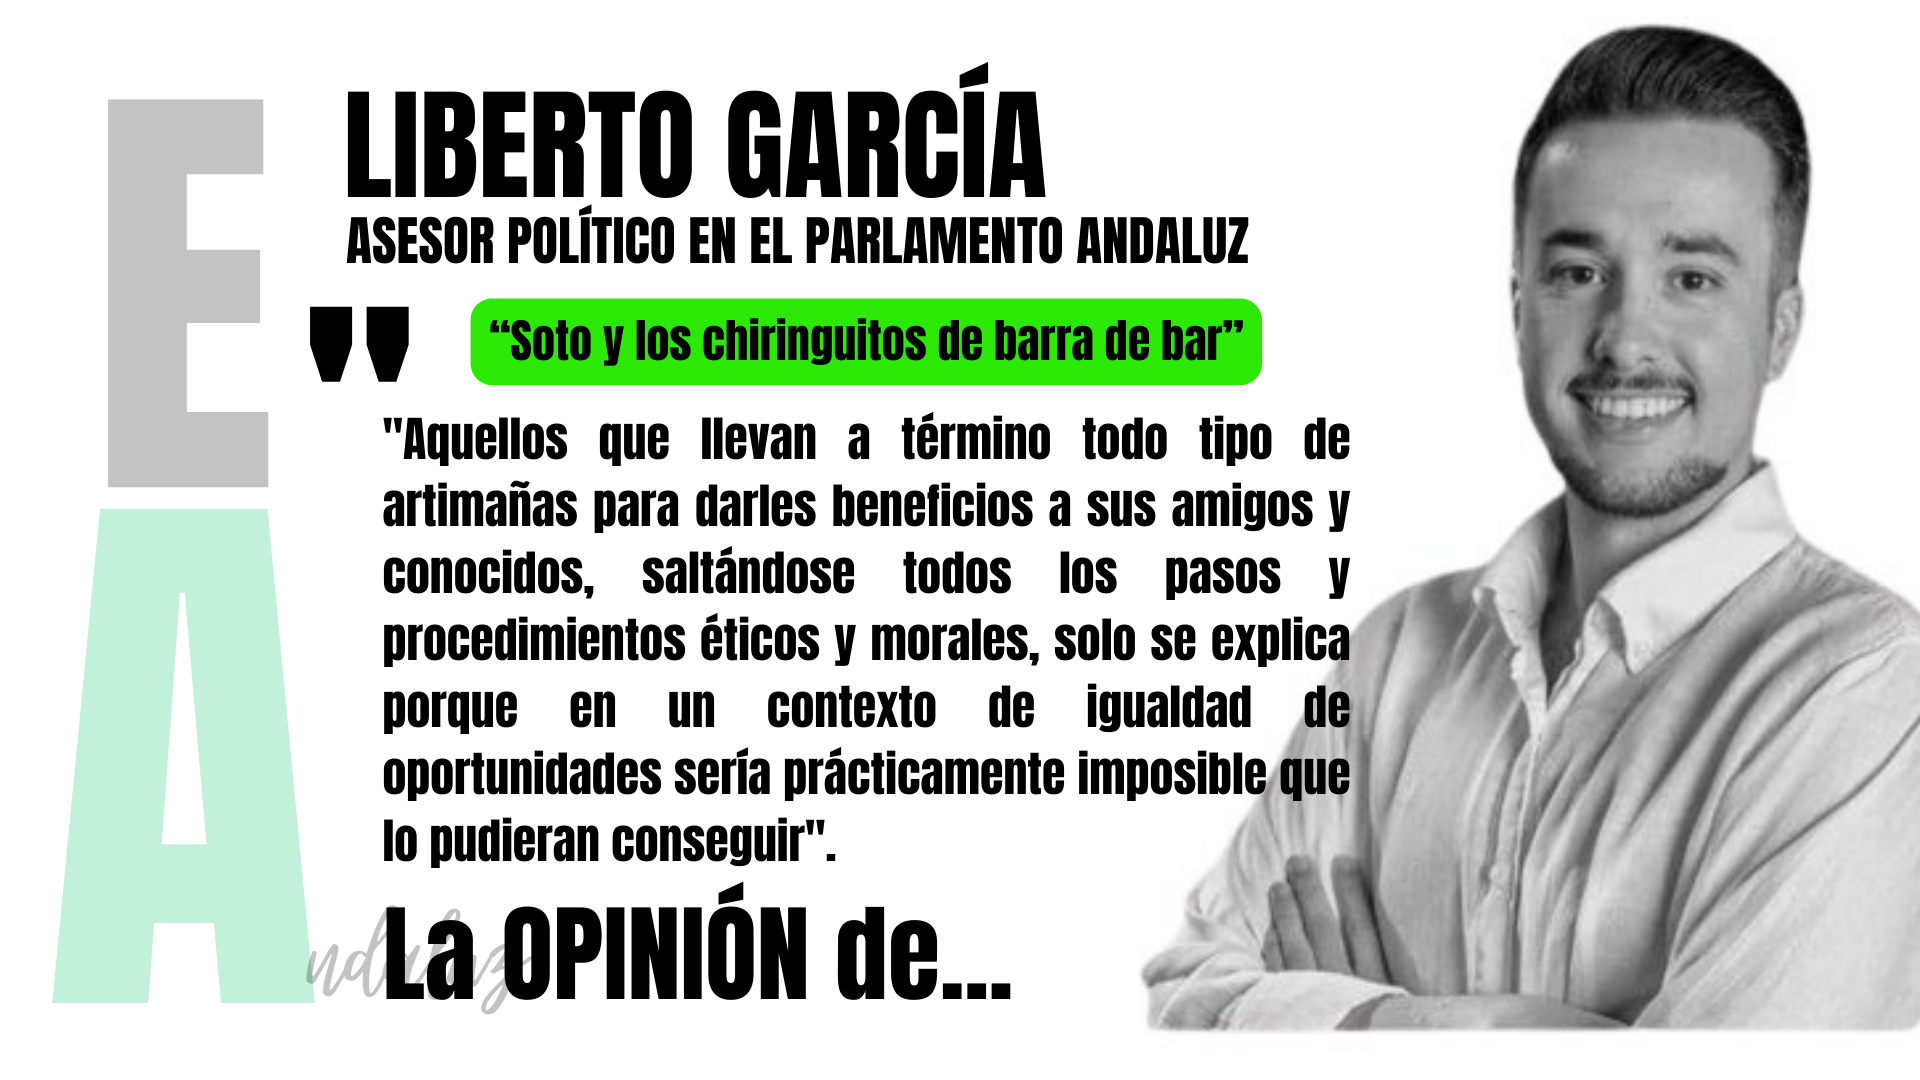 Artículo de Liberto García, asesor en el Parlamento de Andalucía: "Soto y los chiringuitos de barra de bar"